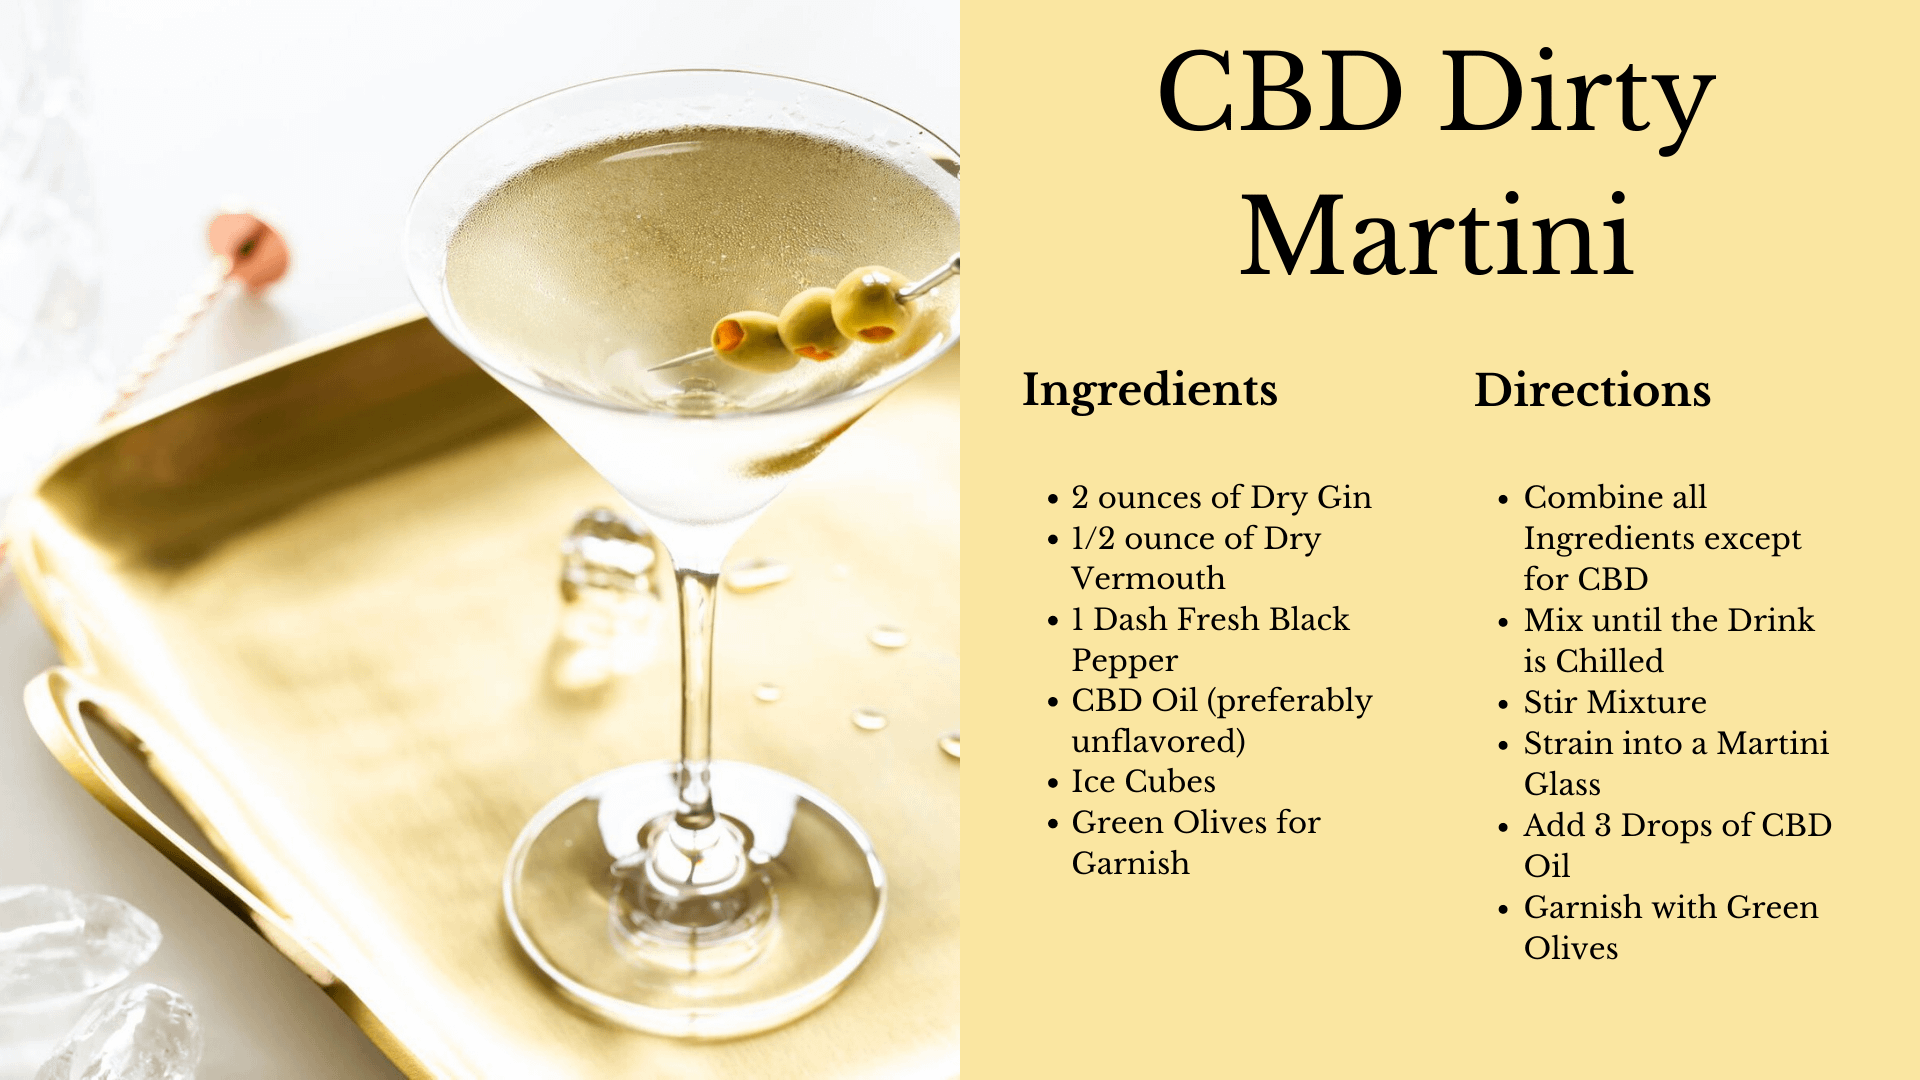 How to make a CBD dirty martini